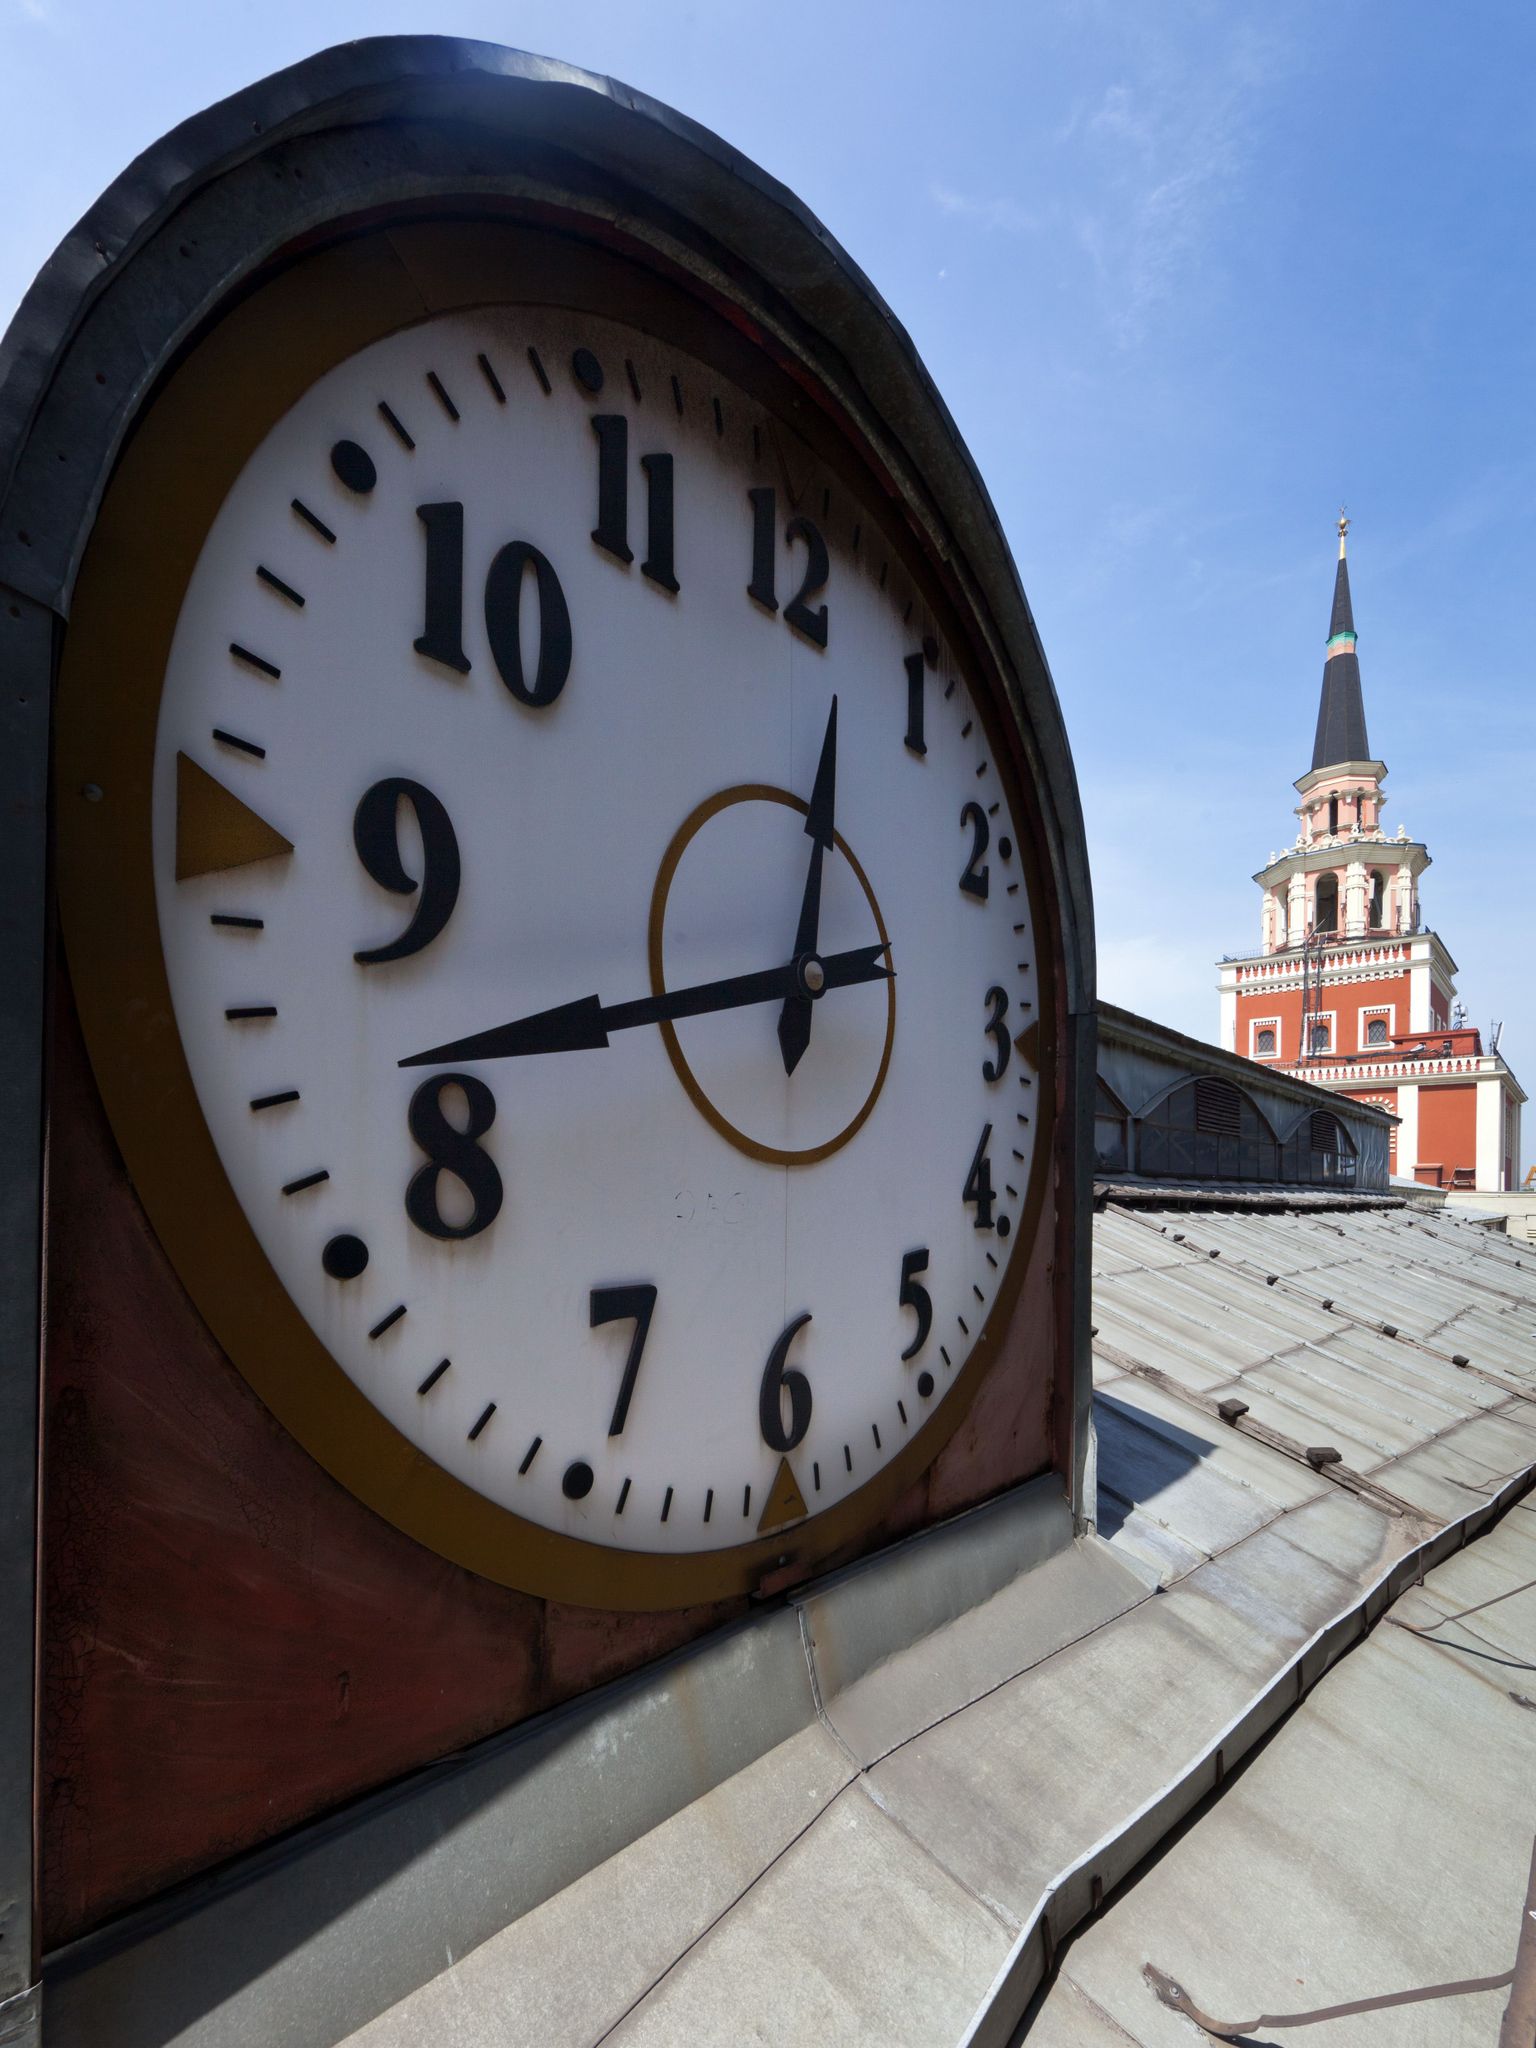 Время в москве по часам. Башенные часы Казанского вокзала. Часы на здании Казанского вокзала. Часы Москва. Московские часы.